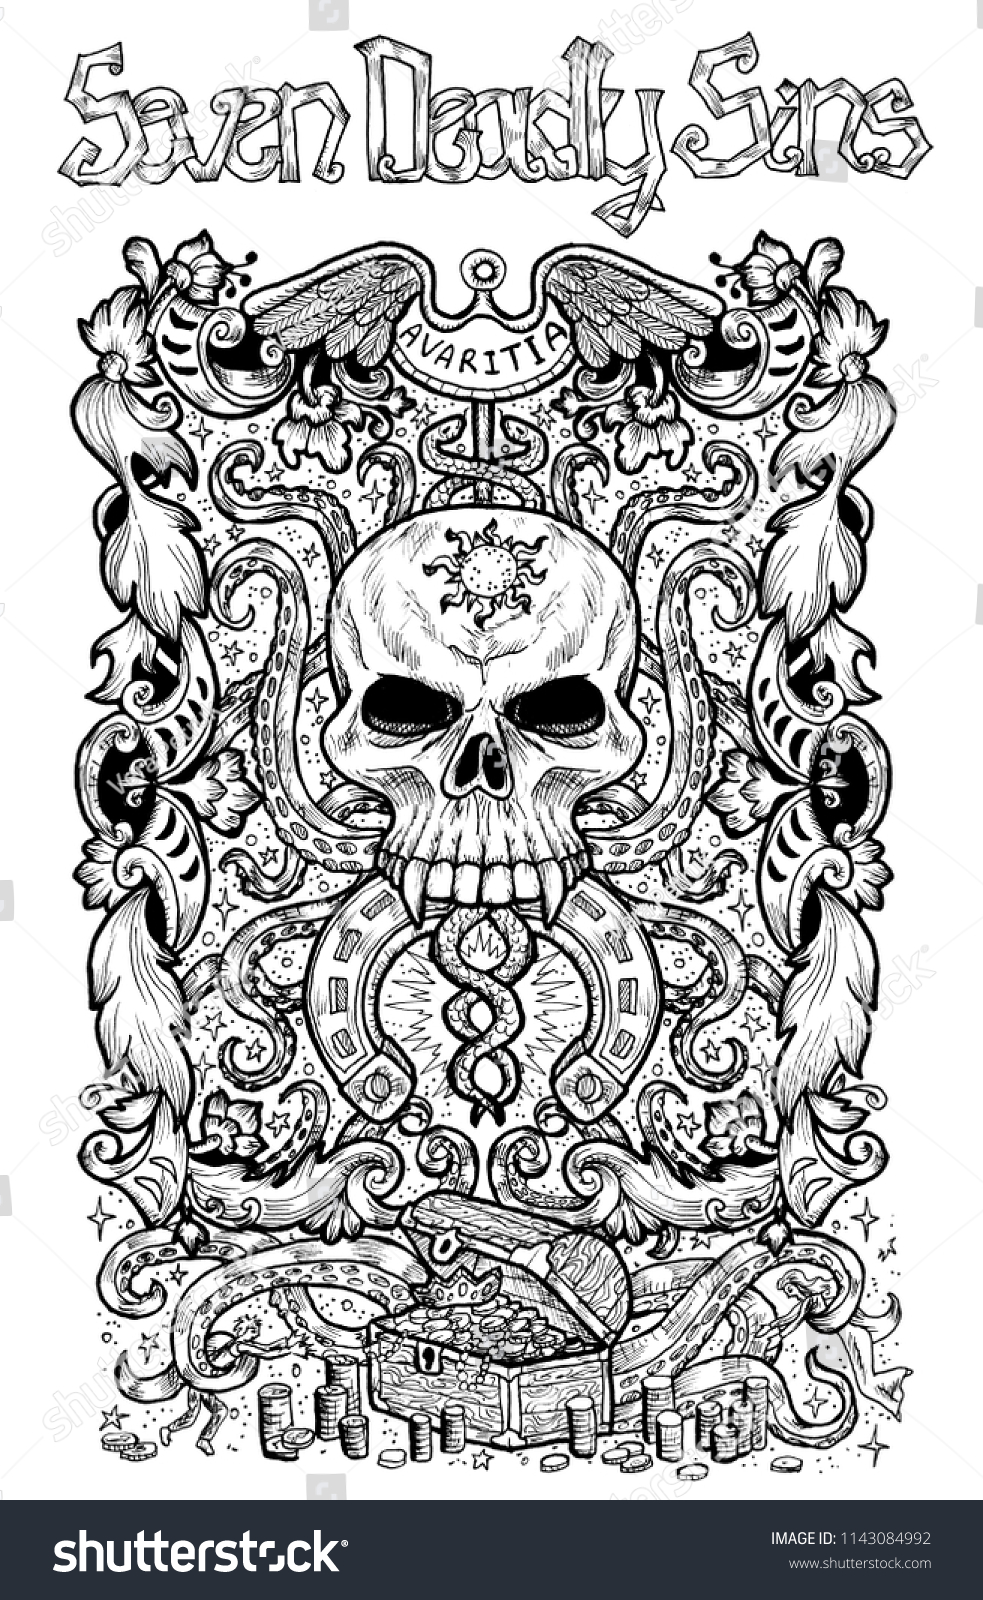 強欲 ラテン語のavaritiaは強欲を意味する 七つの大罪のコンセプト 白黒の線画 手描きの彫刻イラスト タトゥー Tシャツデザイン 宗教シンボル のイラスト素材